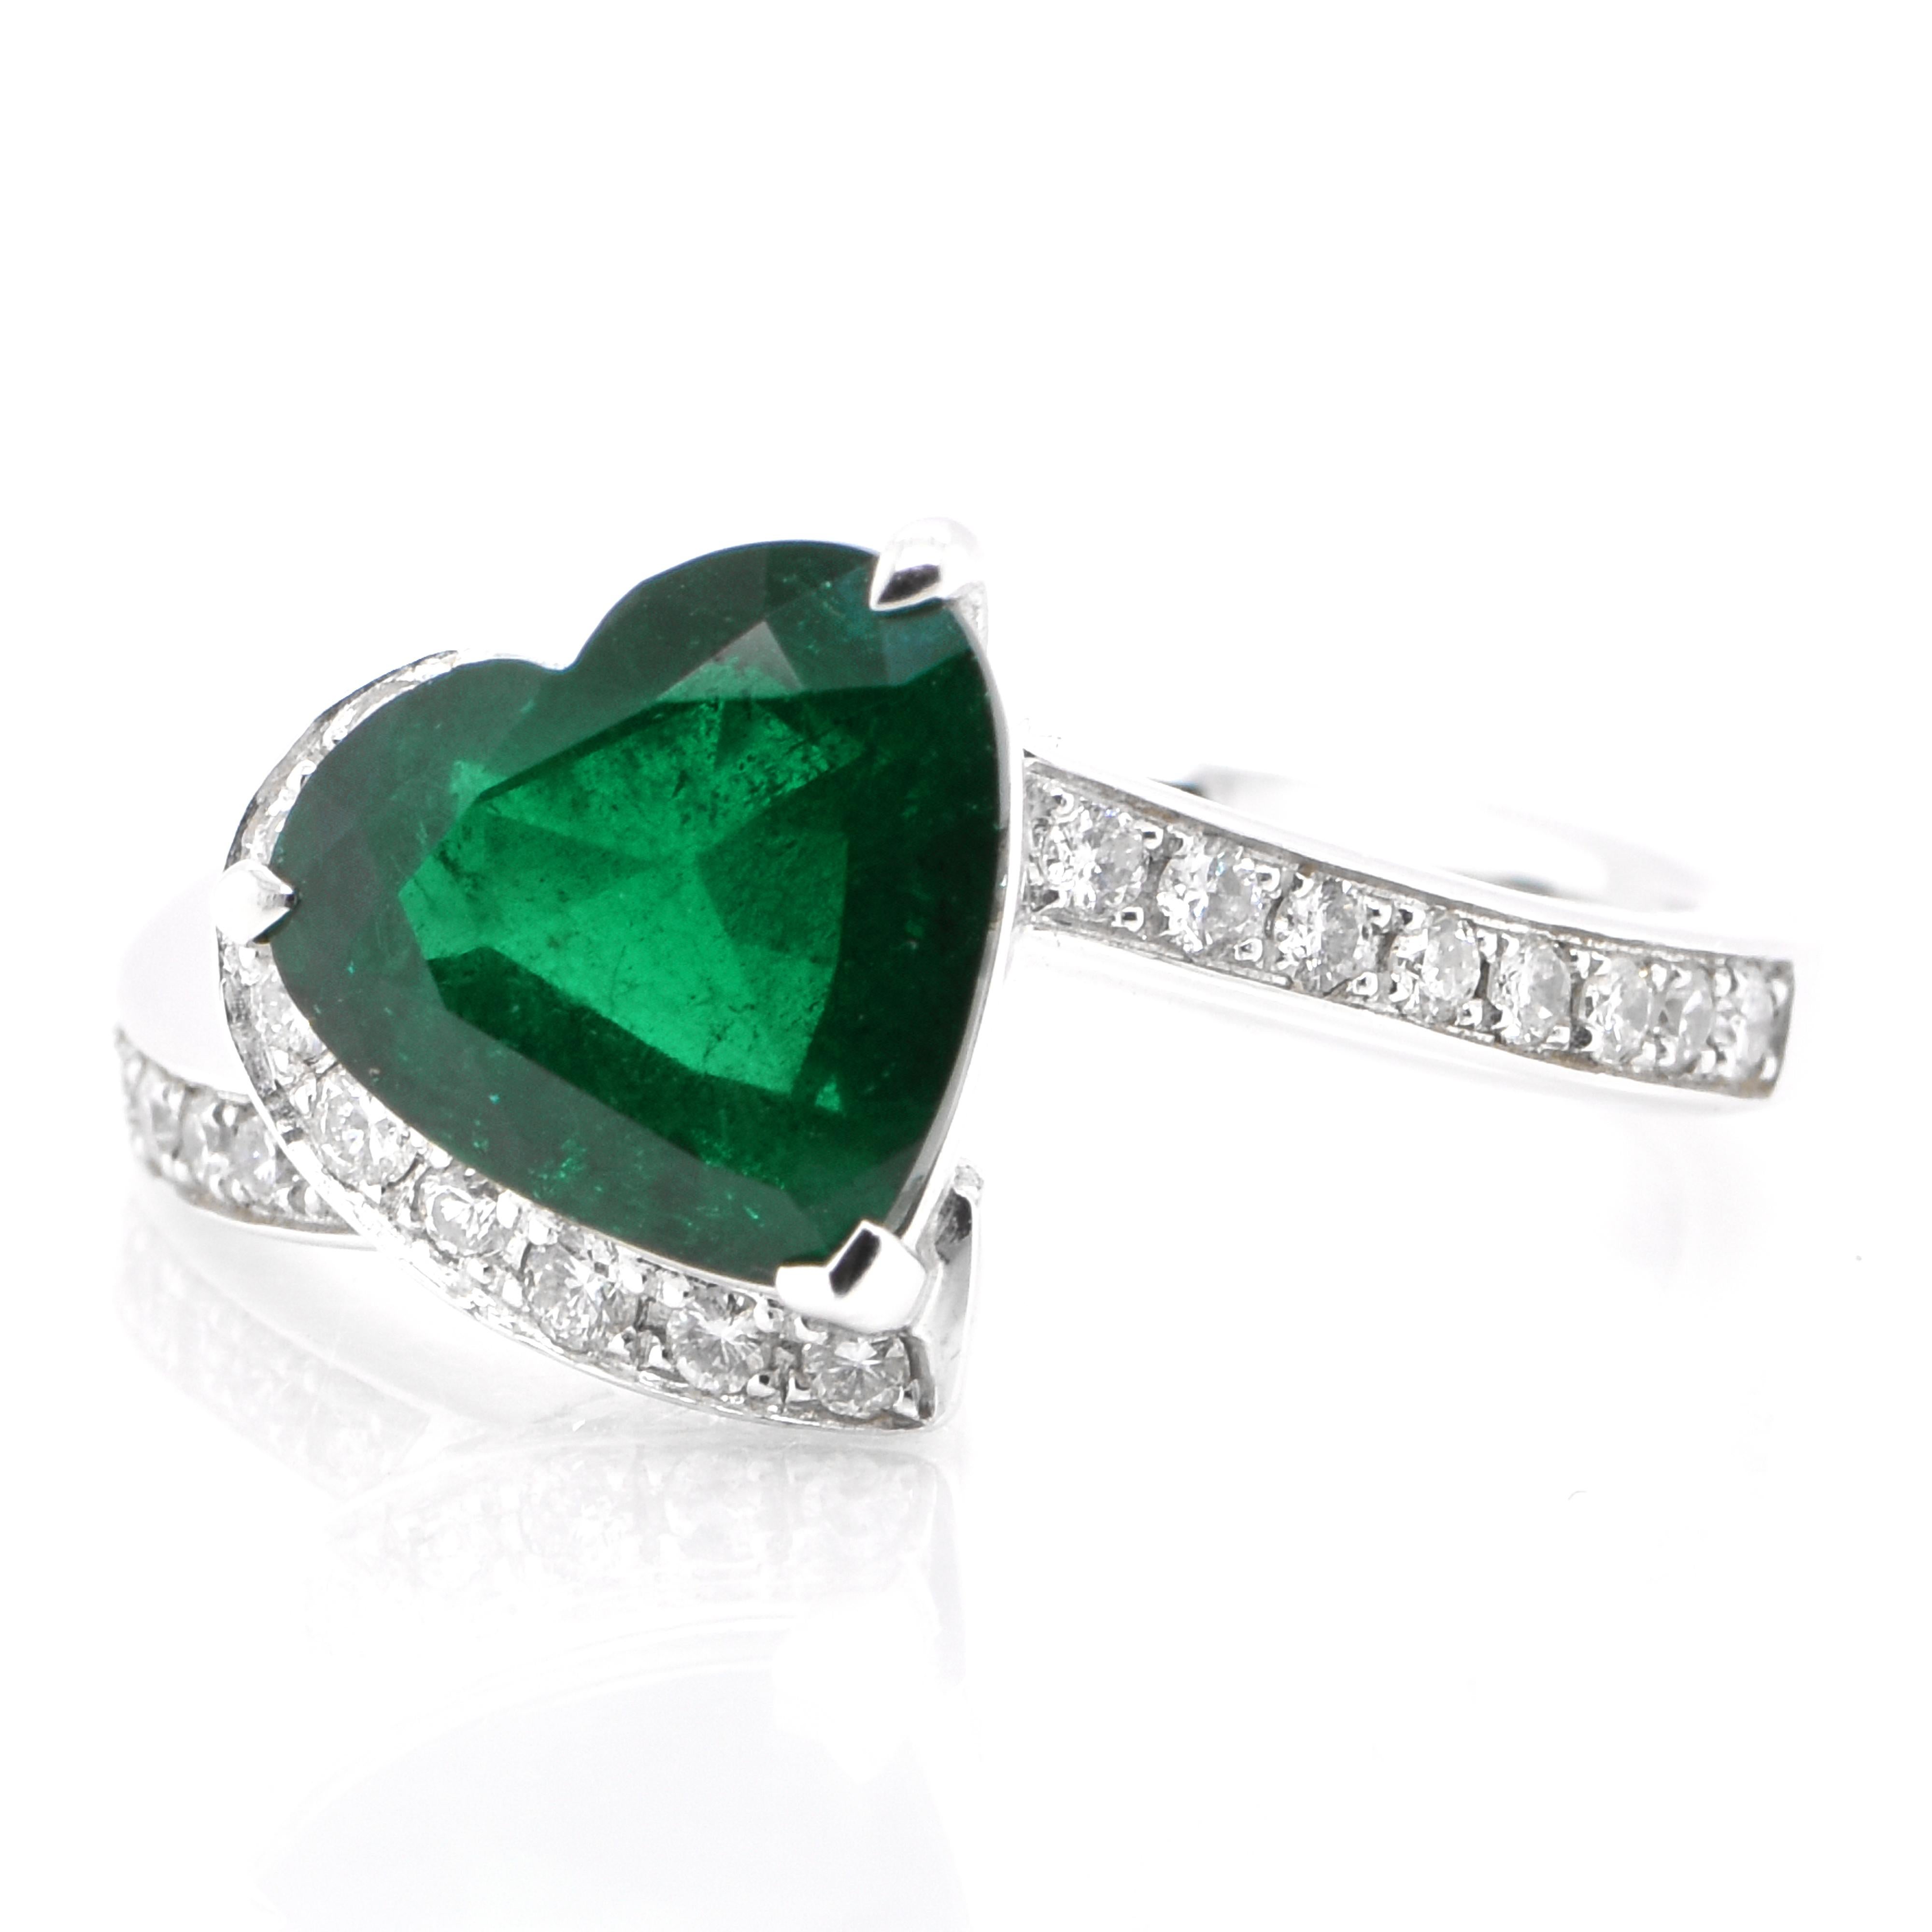 Ein atemberaubender Ring mit einem GRS-zertifizierten 2,29-Karat-Smaragd und 0,33-Karat-Diamanten, gefasst in Platin. Seit Tausenden von Jahren bewundern die Menschen das Grün des Smaragds. Smaragde werden seit jeher mit den üppigsten Landschaften